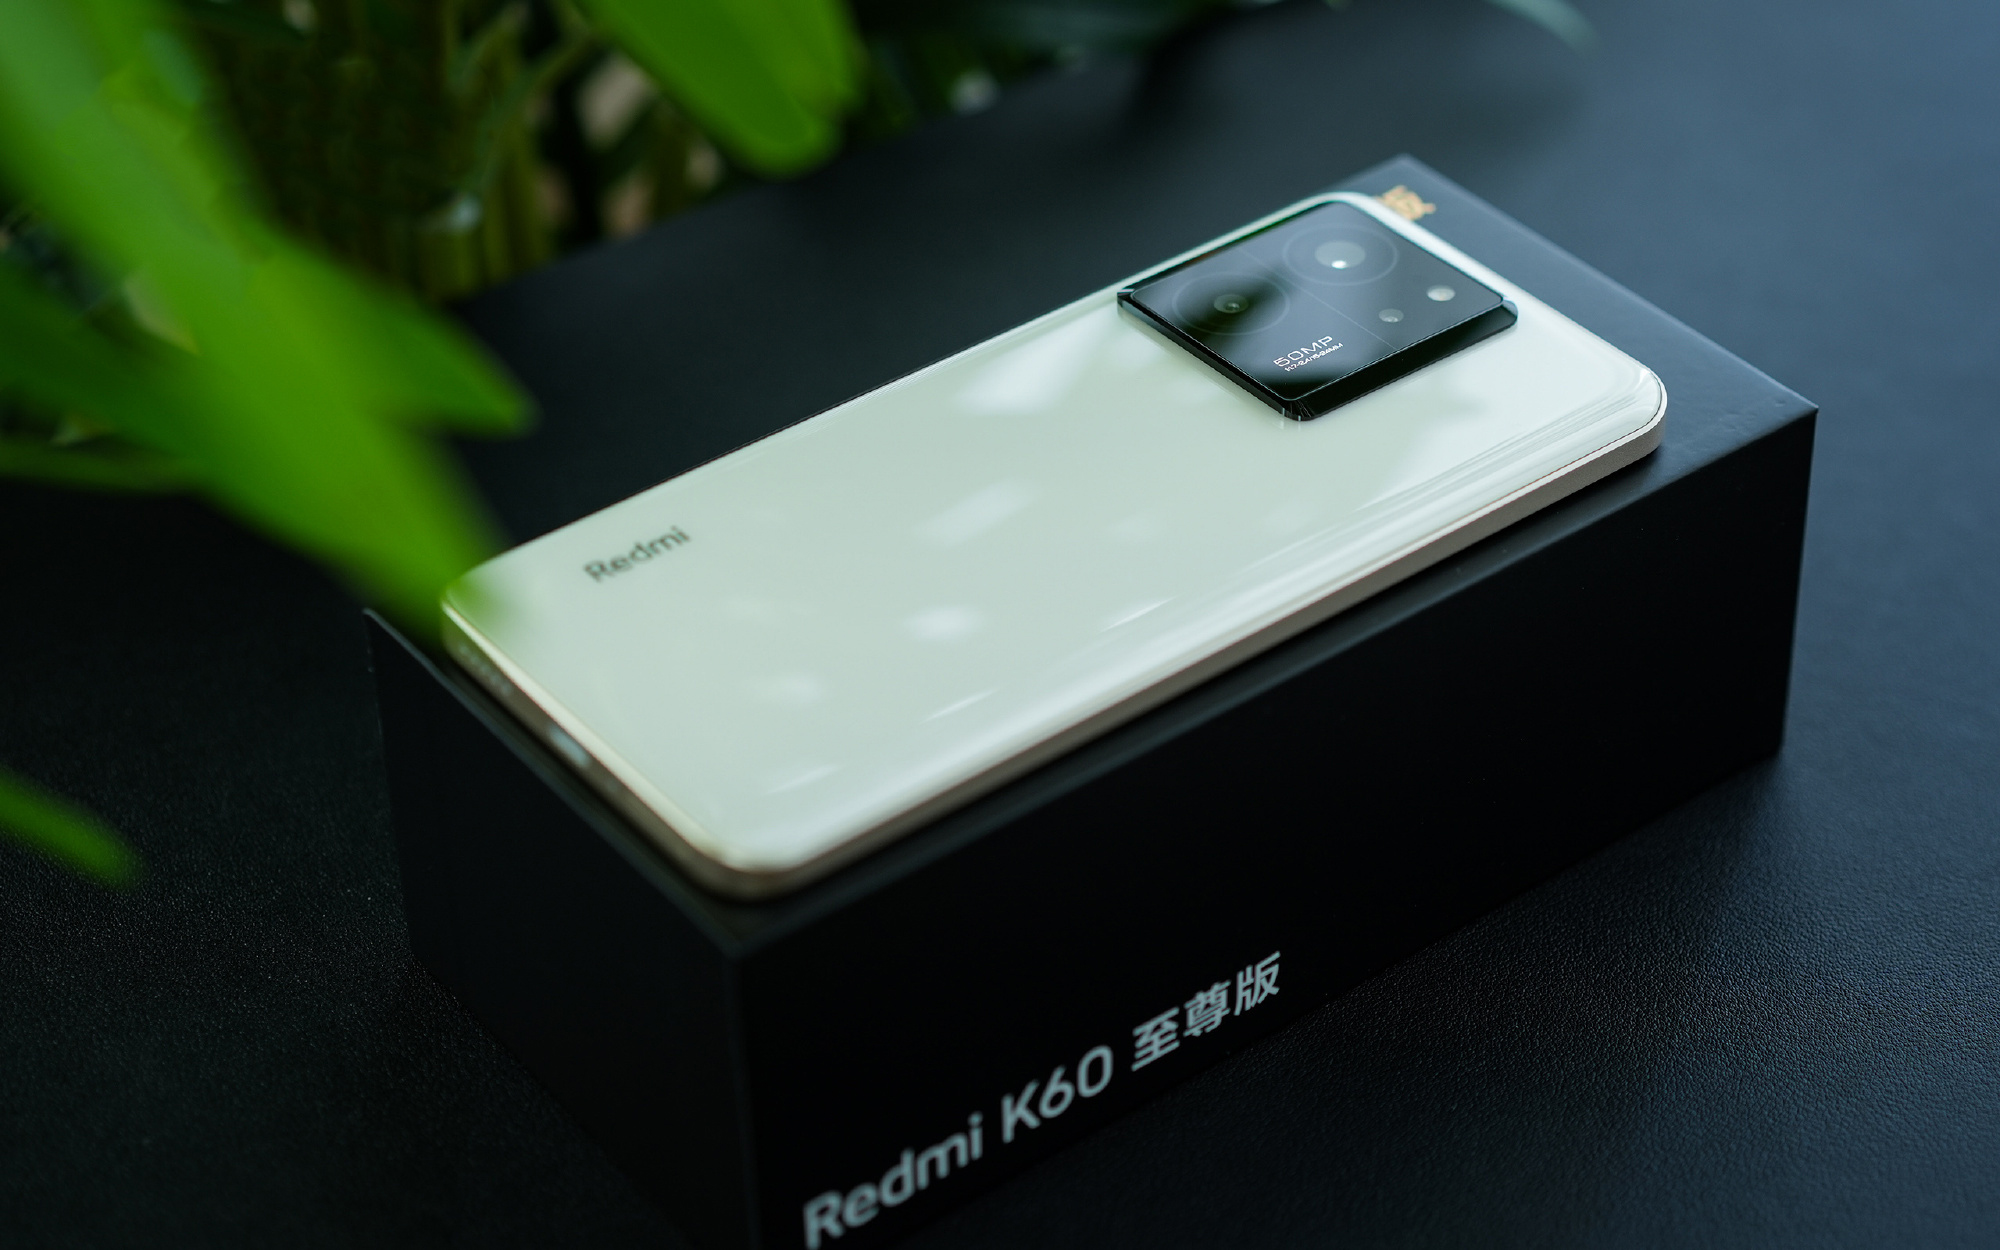 محصول شیائومی - xiaomi گوشی هوشمند شیائومی مدل Redmi K60 (ULTRA)Extreme Edition